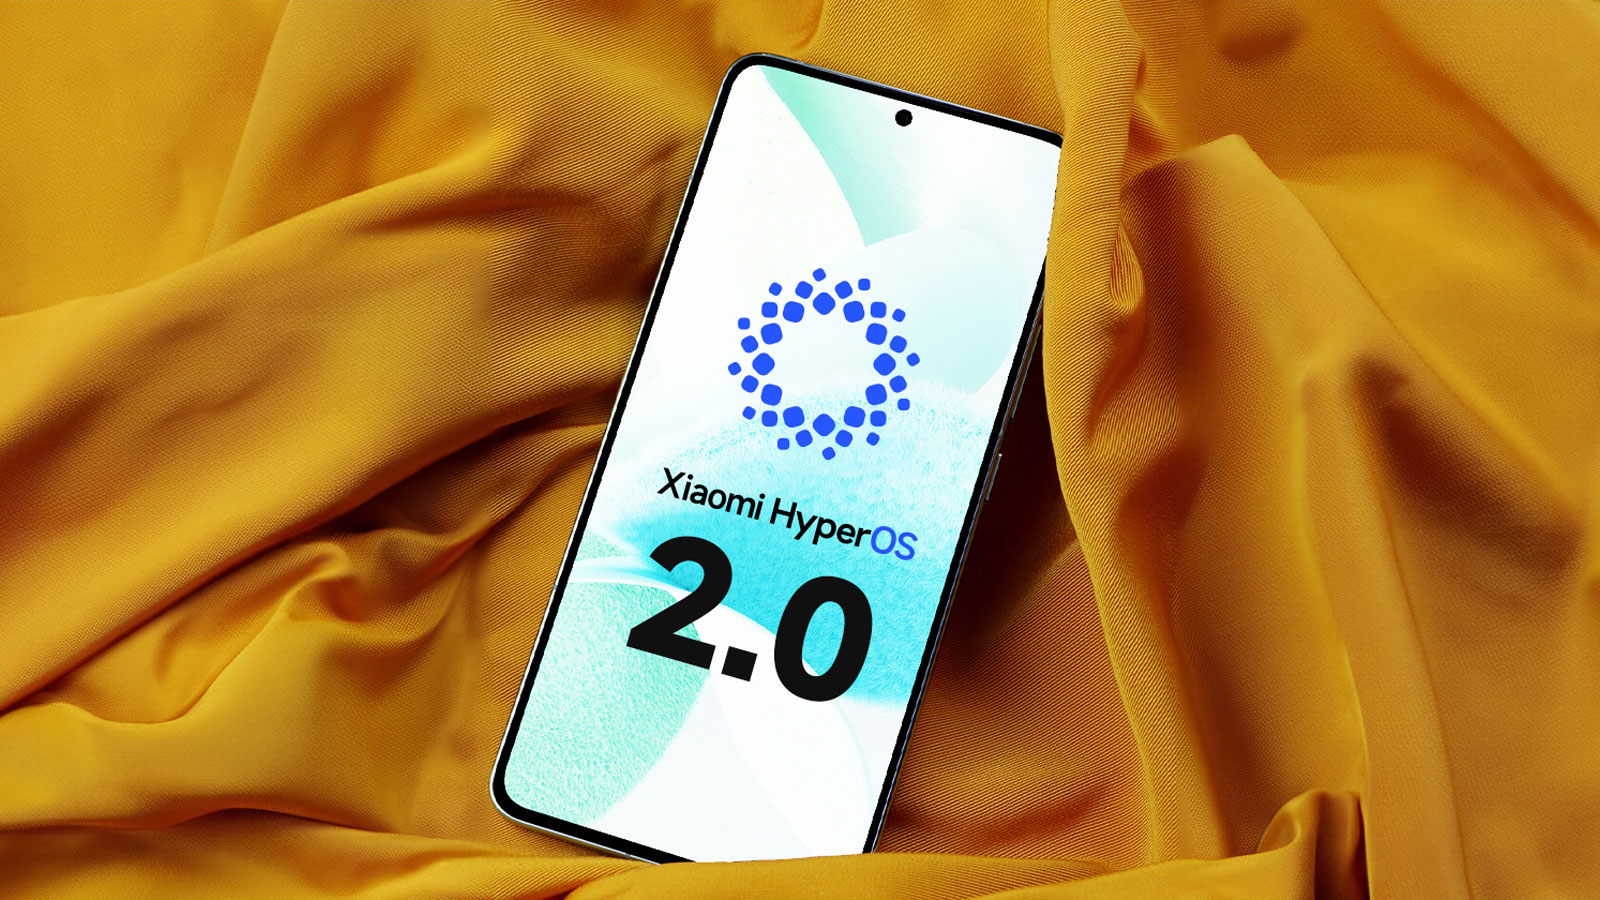 تغییرات احتمالی HyperOS 2.0؛ منتظر تغییرات شگرف باشید!